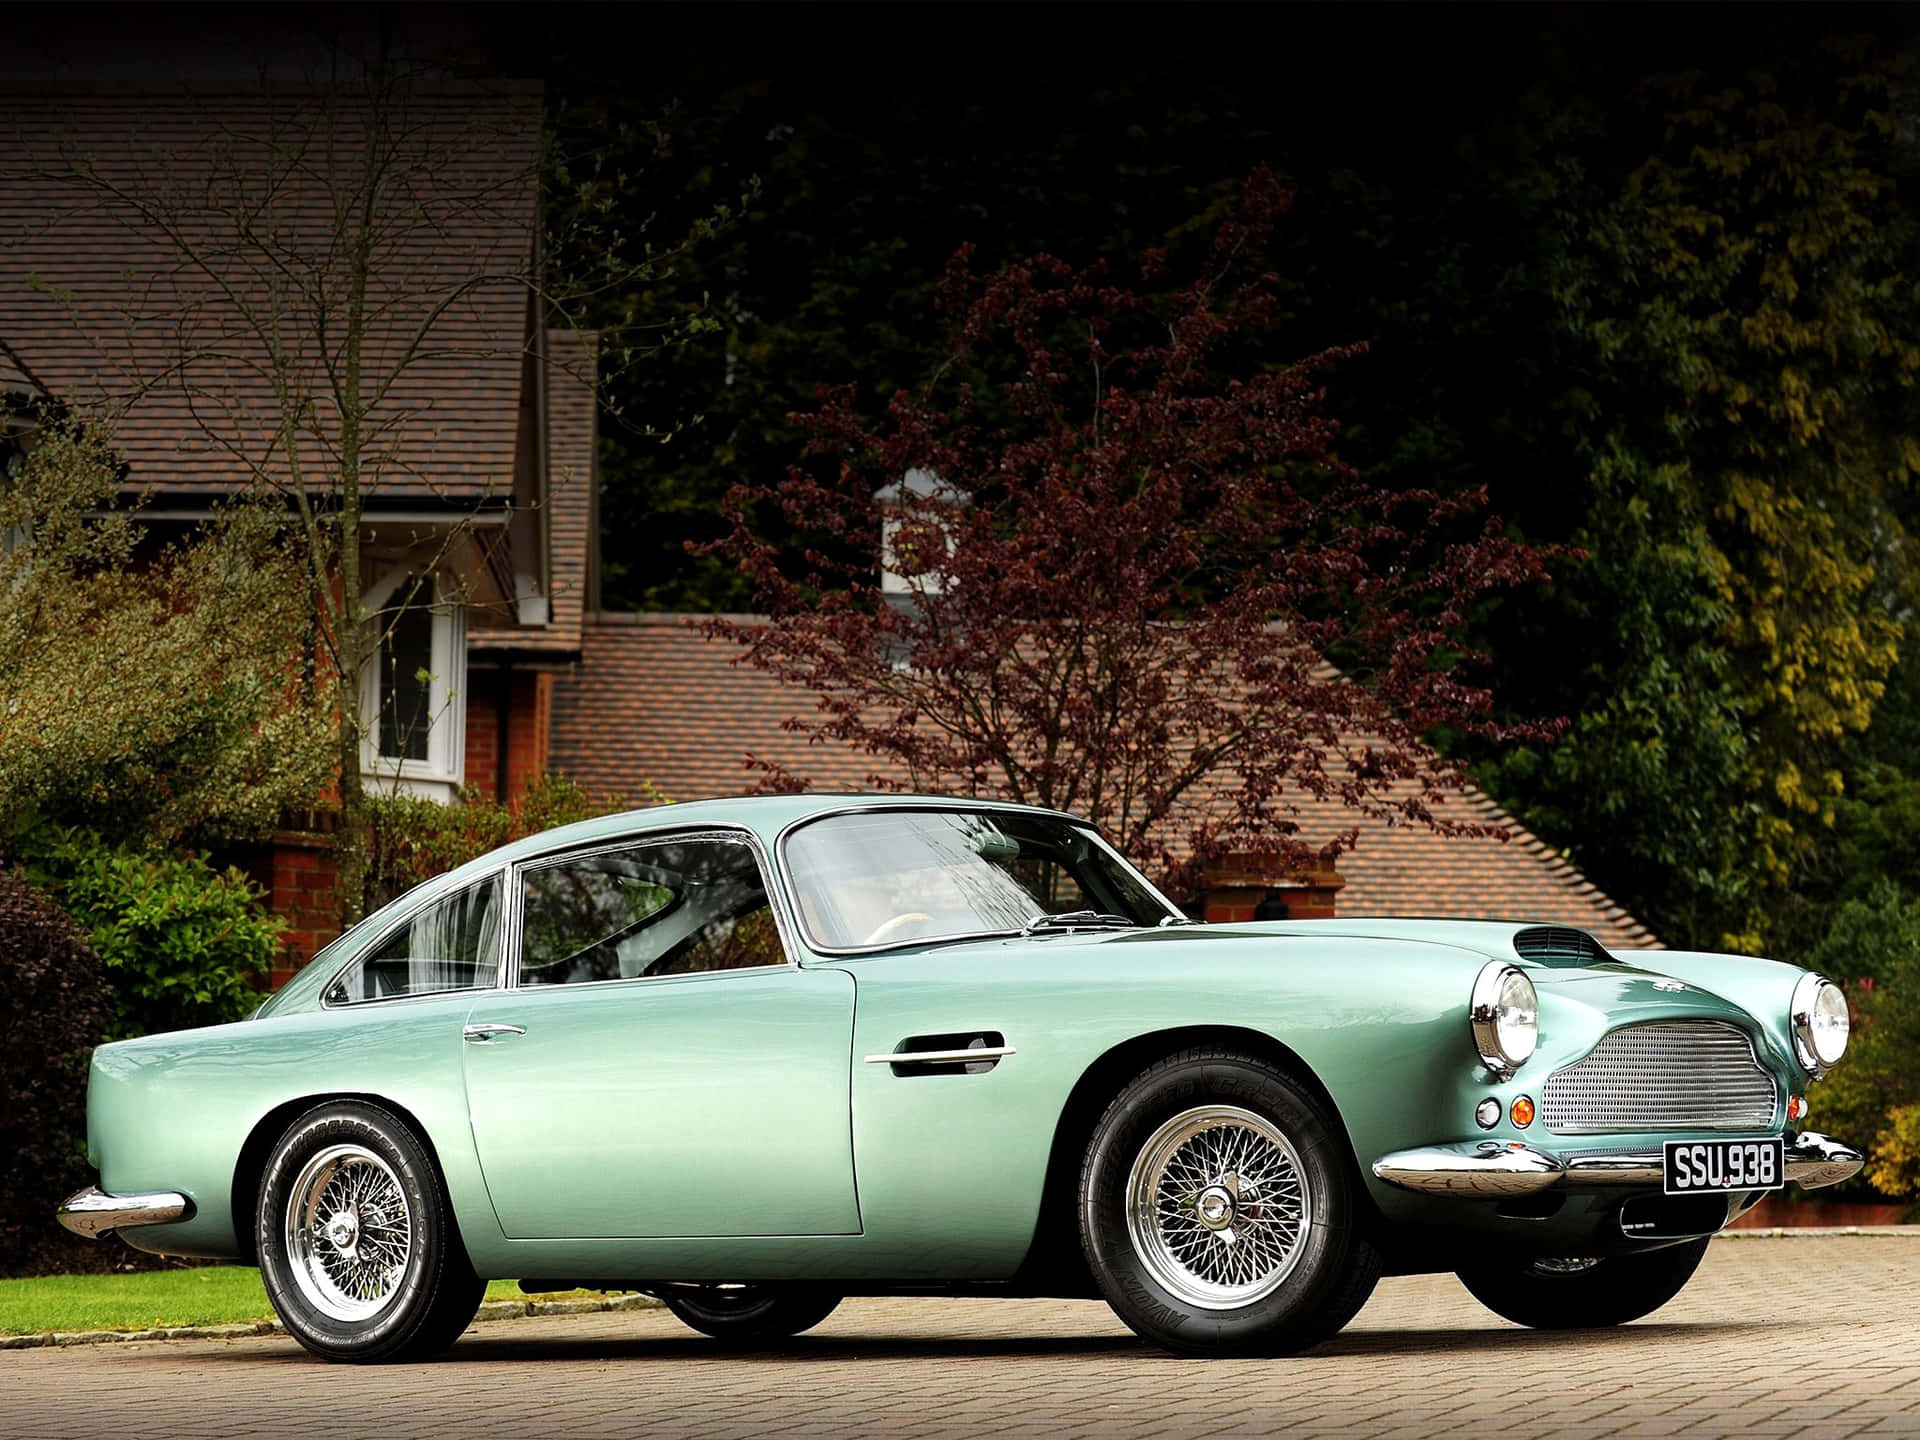 Engrön Aston Martin Db5 Parkerad Framför Ett Hus Wallpaper